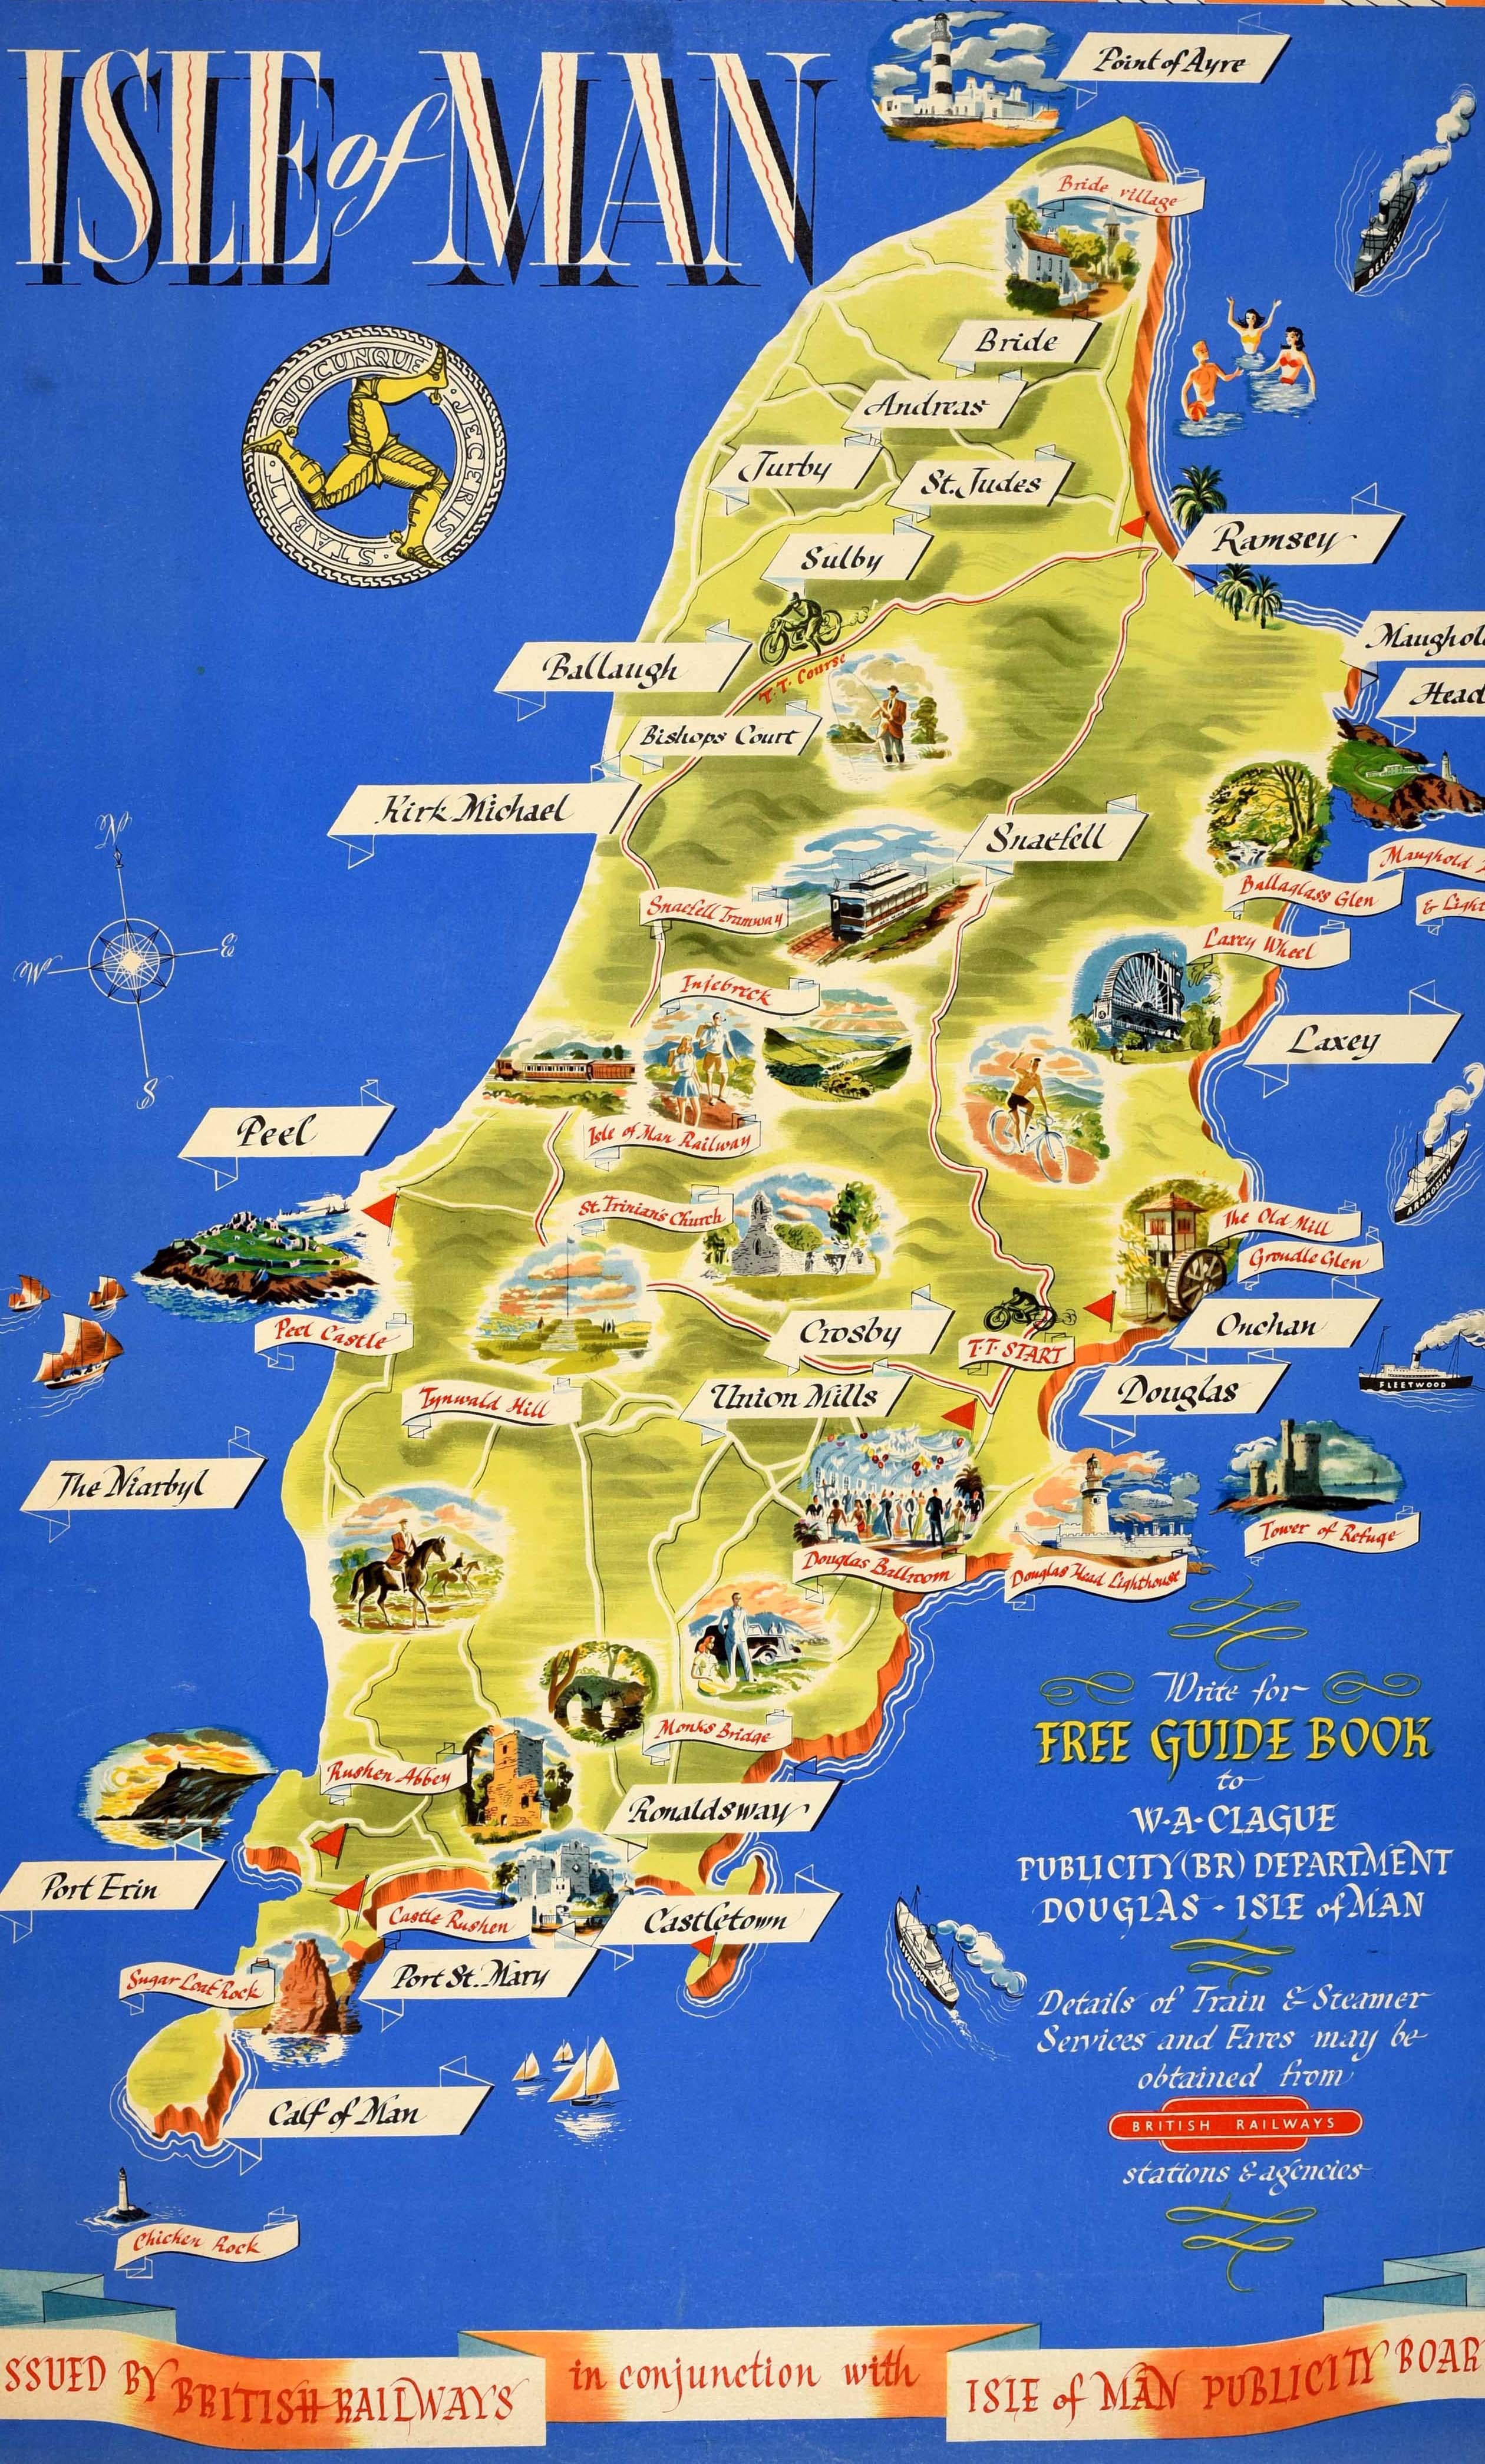 Originales Vintage-Reisekartenposter für die Isle of Man, herausgegeben von British Railways in Zusammenarbeit mit dem Isle of Man Publicity Board, mit einer Bildkarte, die mit Städtenamen und Abbildungen von lokalen Sehenswürdigkeiten versehen ist,